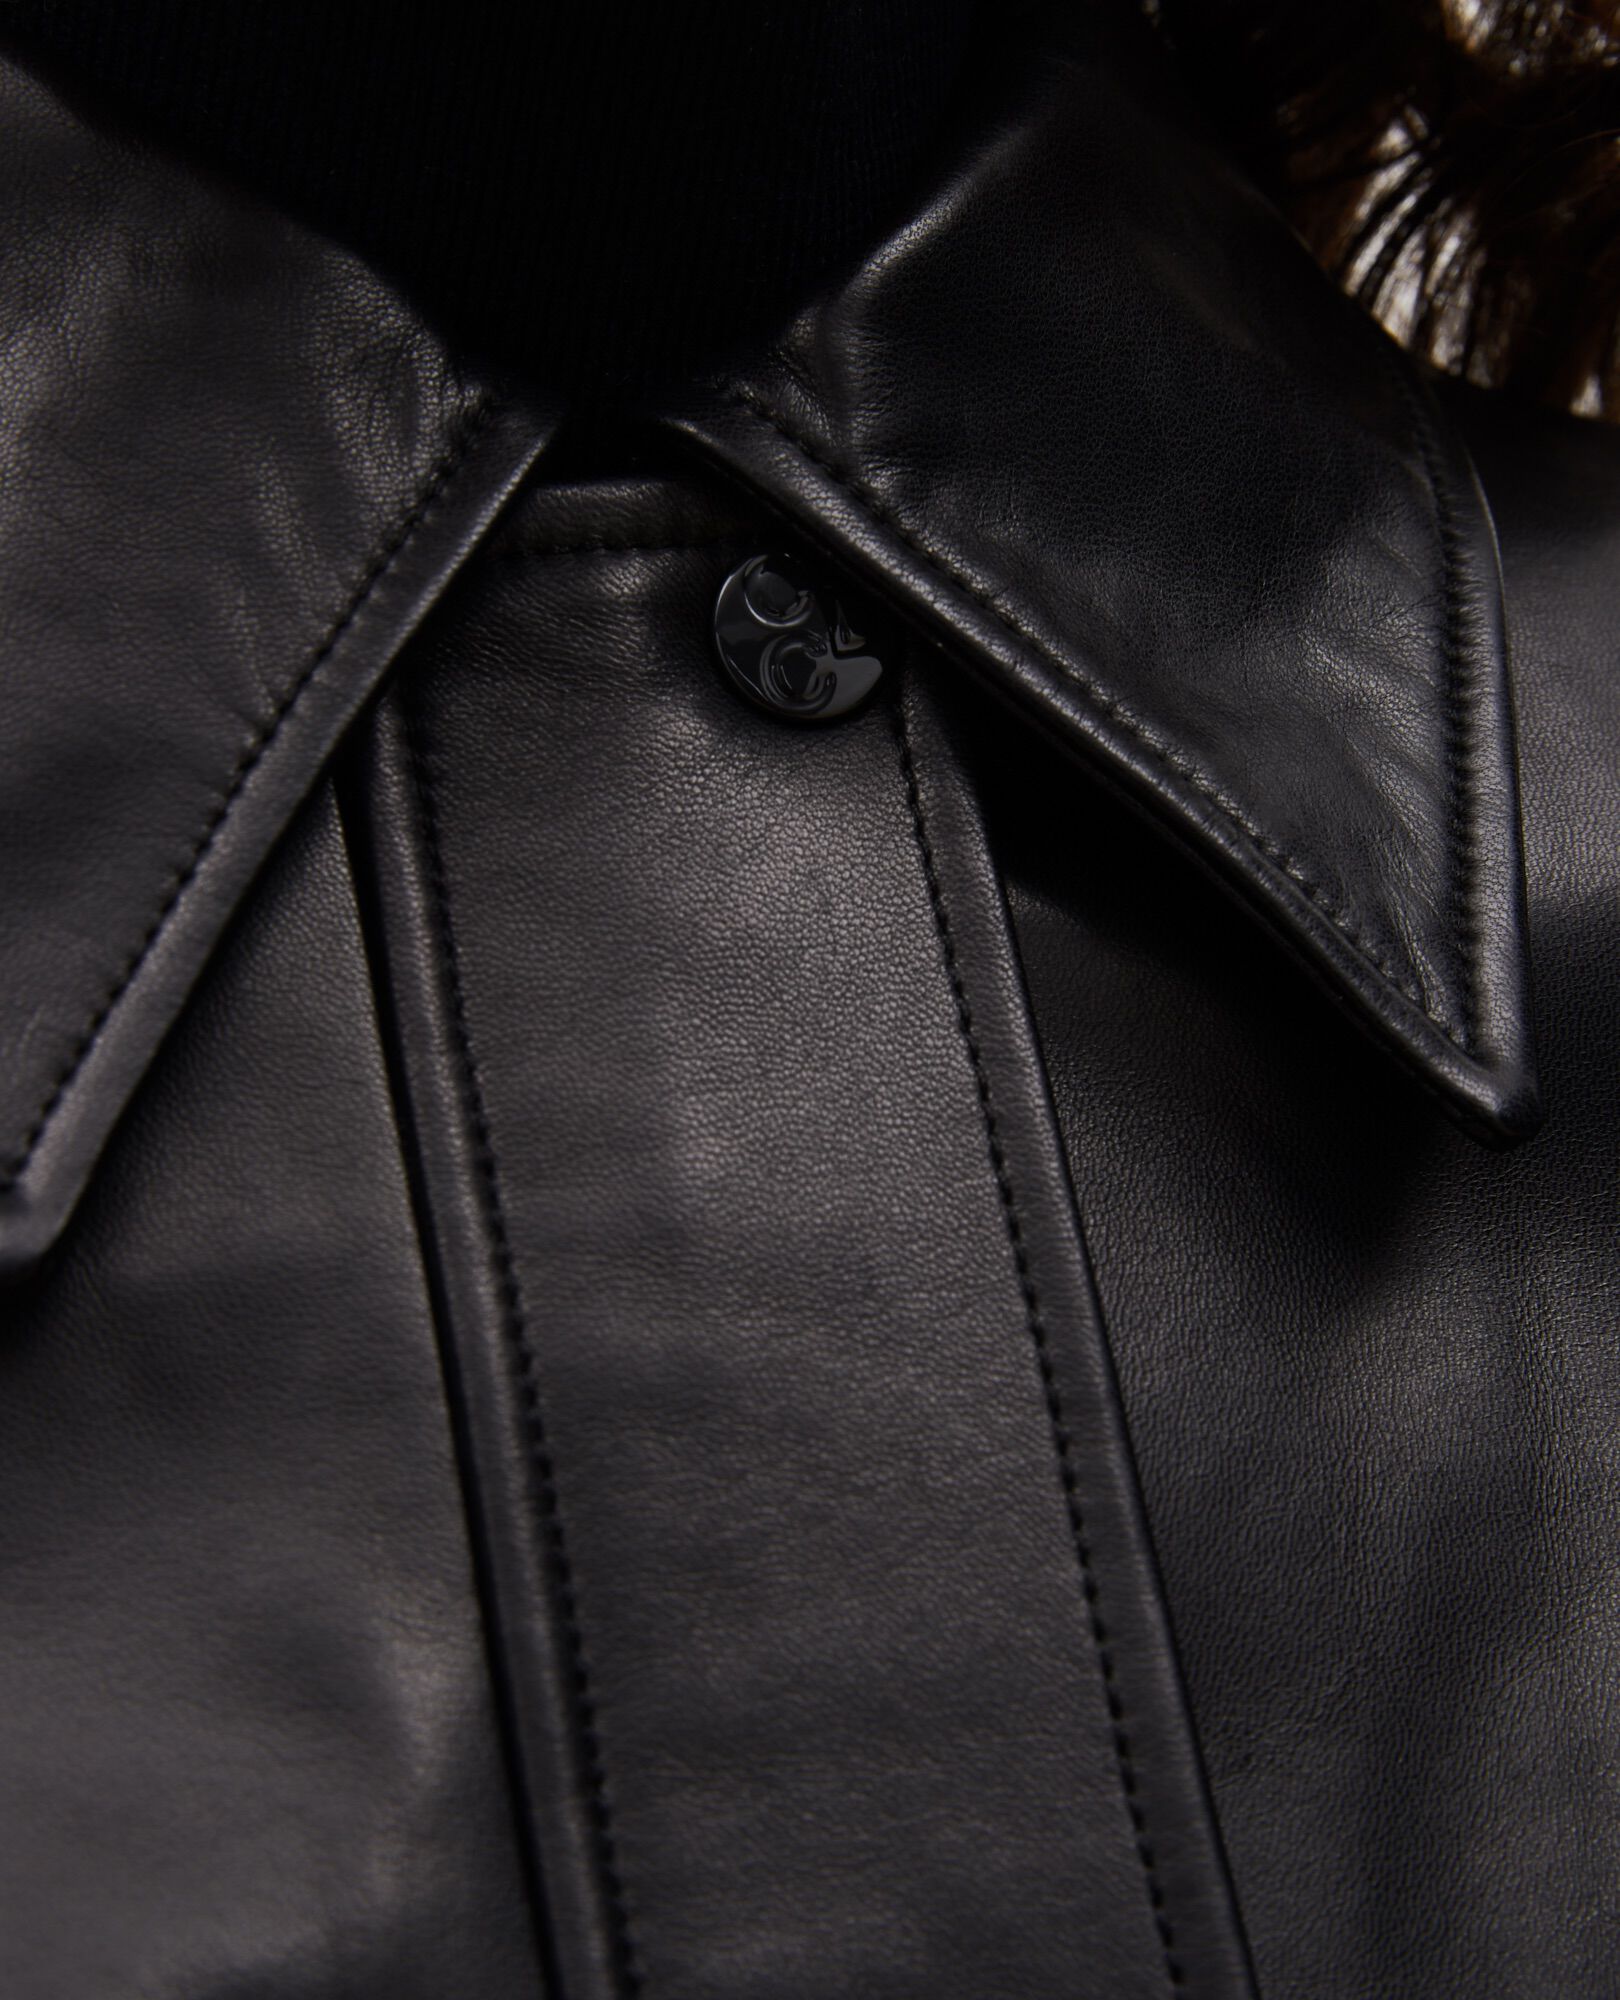 Lambskin zipped jacket. Black beauty Mettray